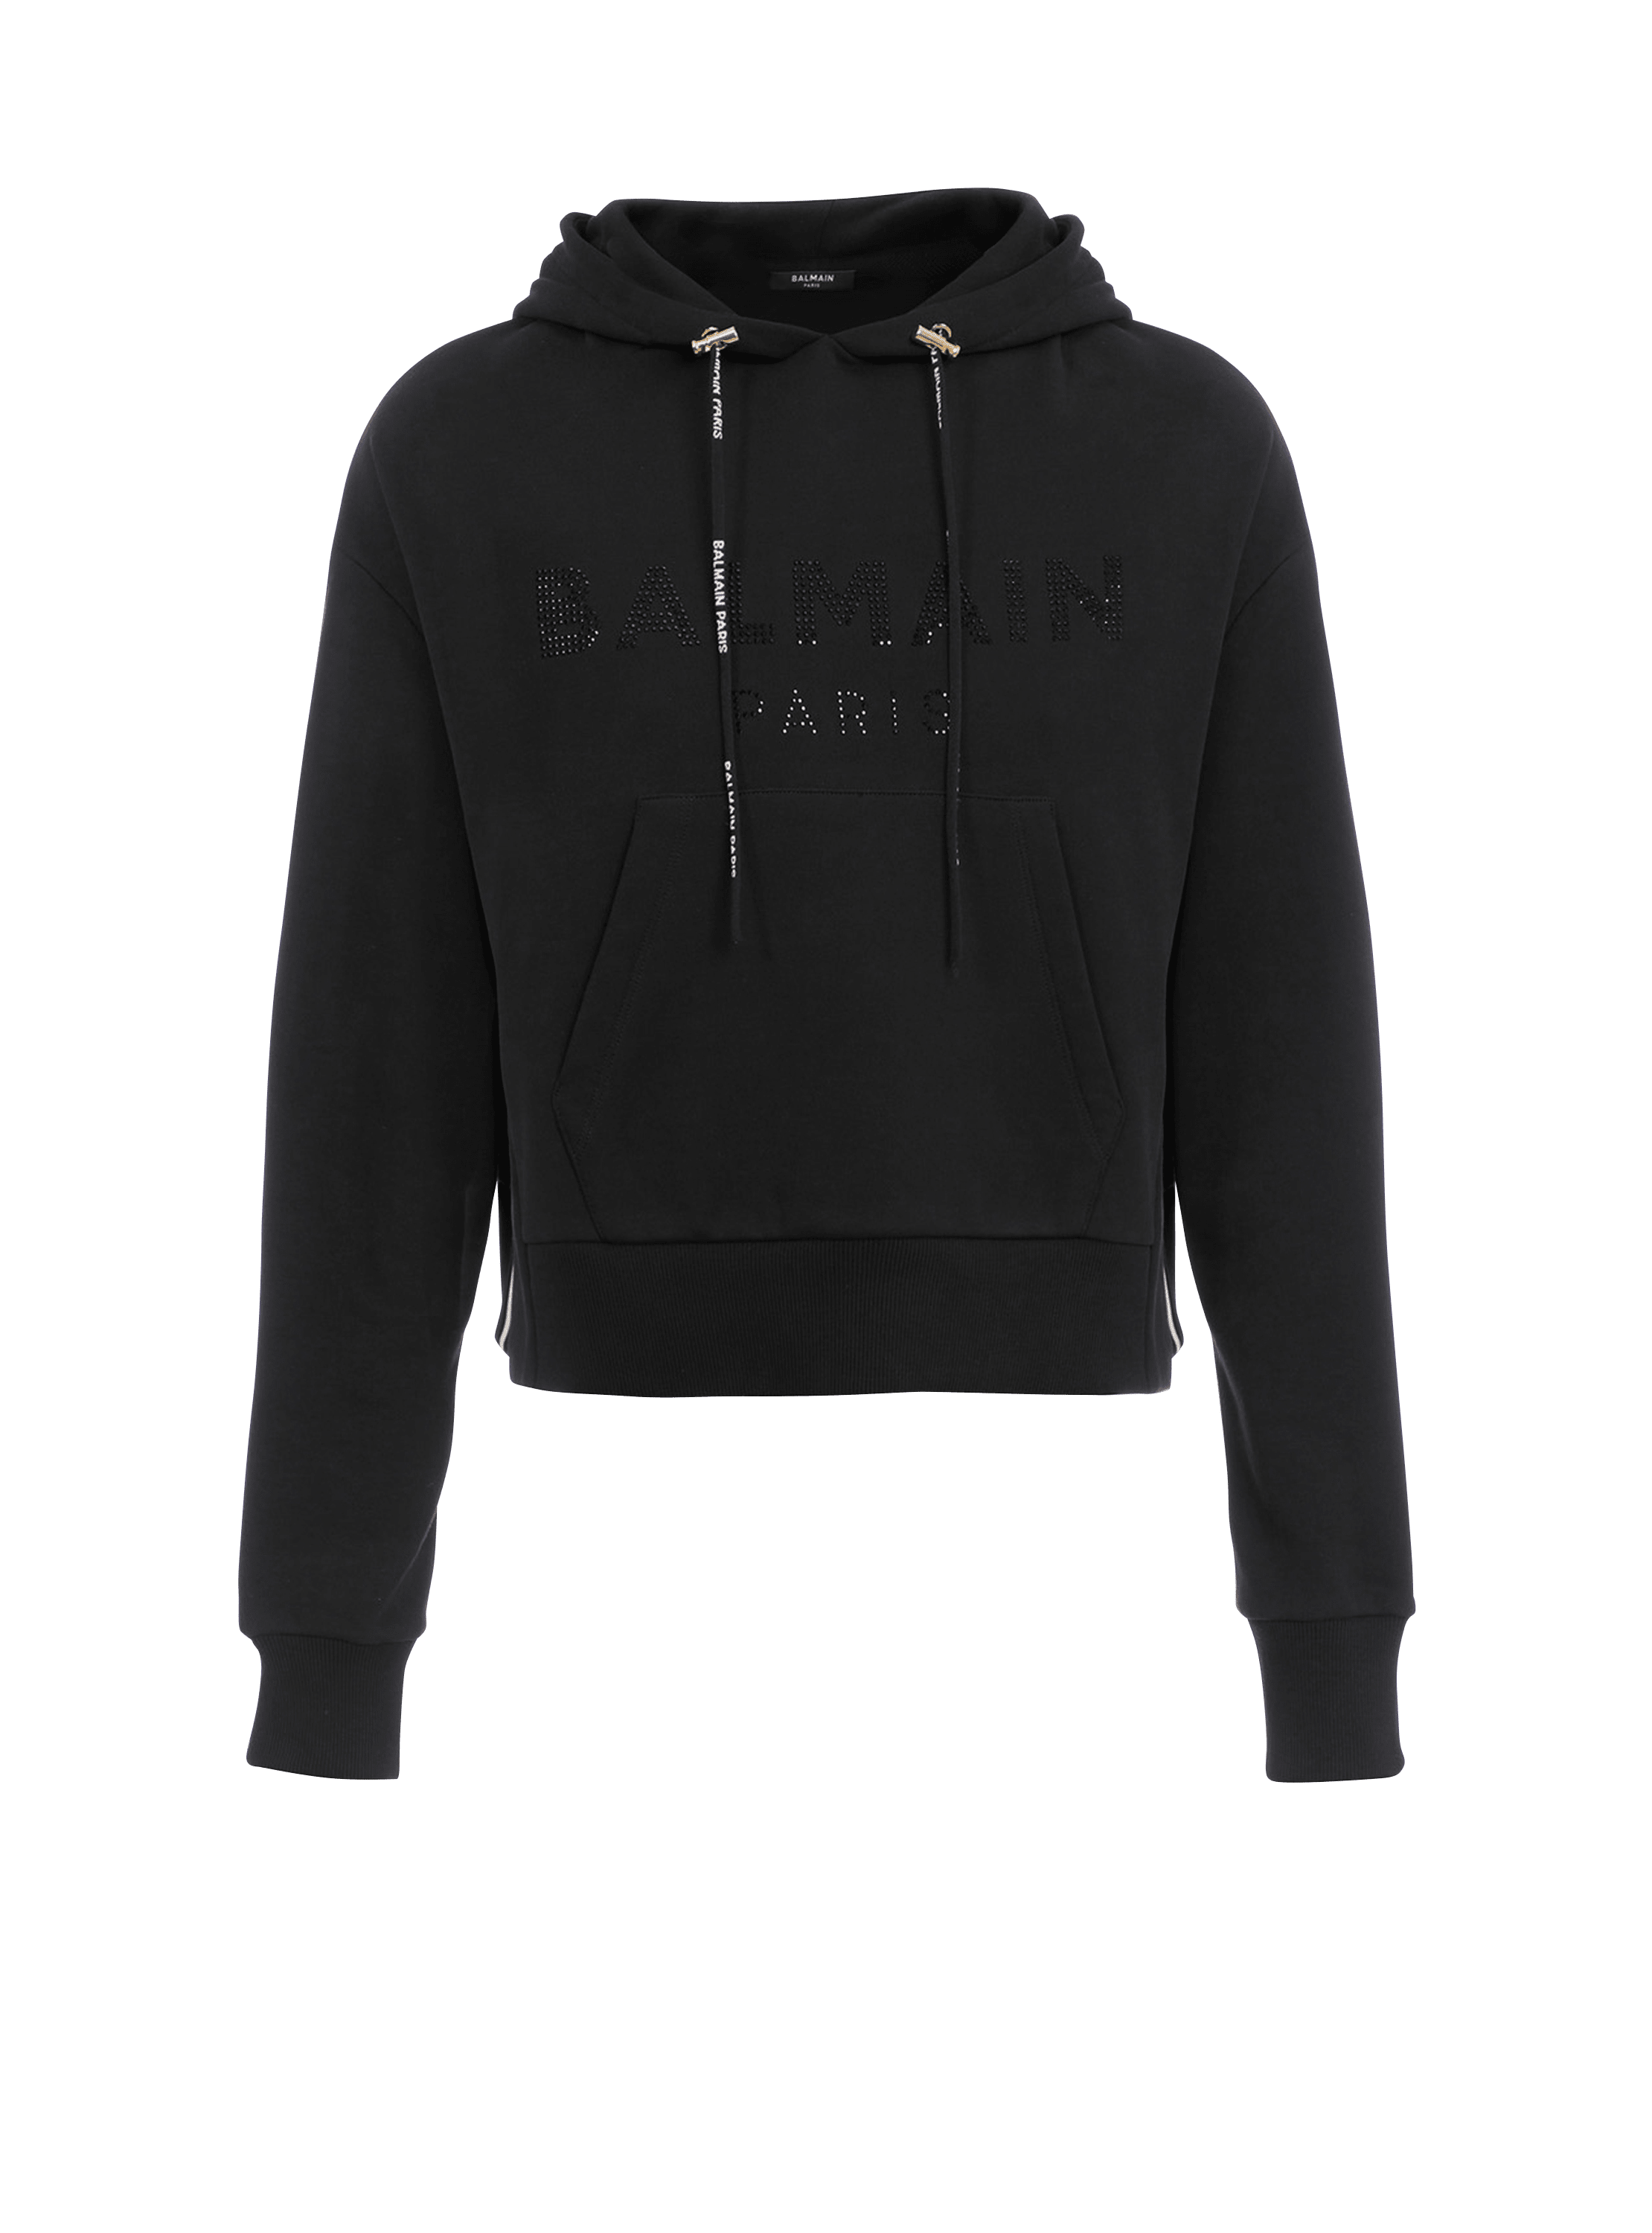 Sweat-shirt court en coton éco-design avec logo Balmain strassé, noir, hi-res